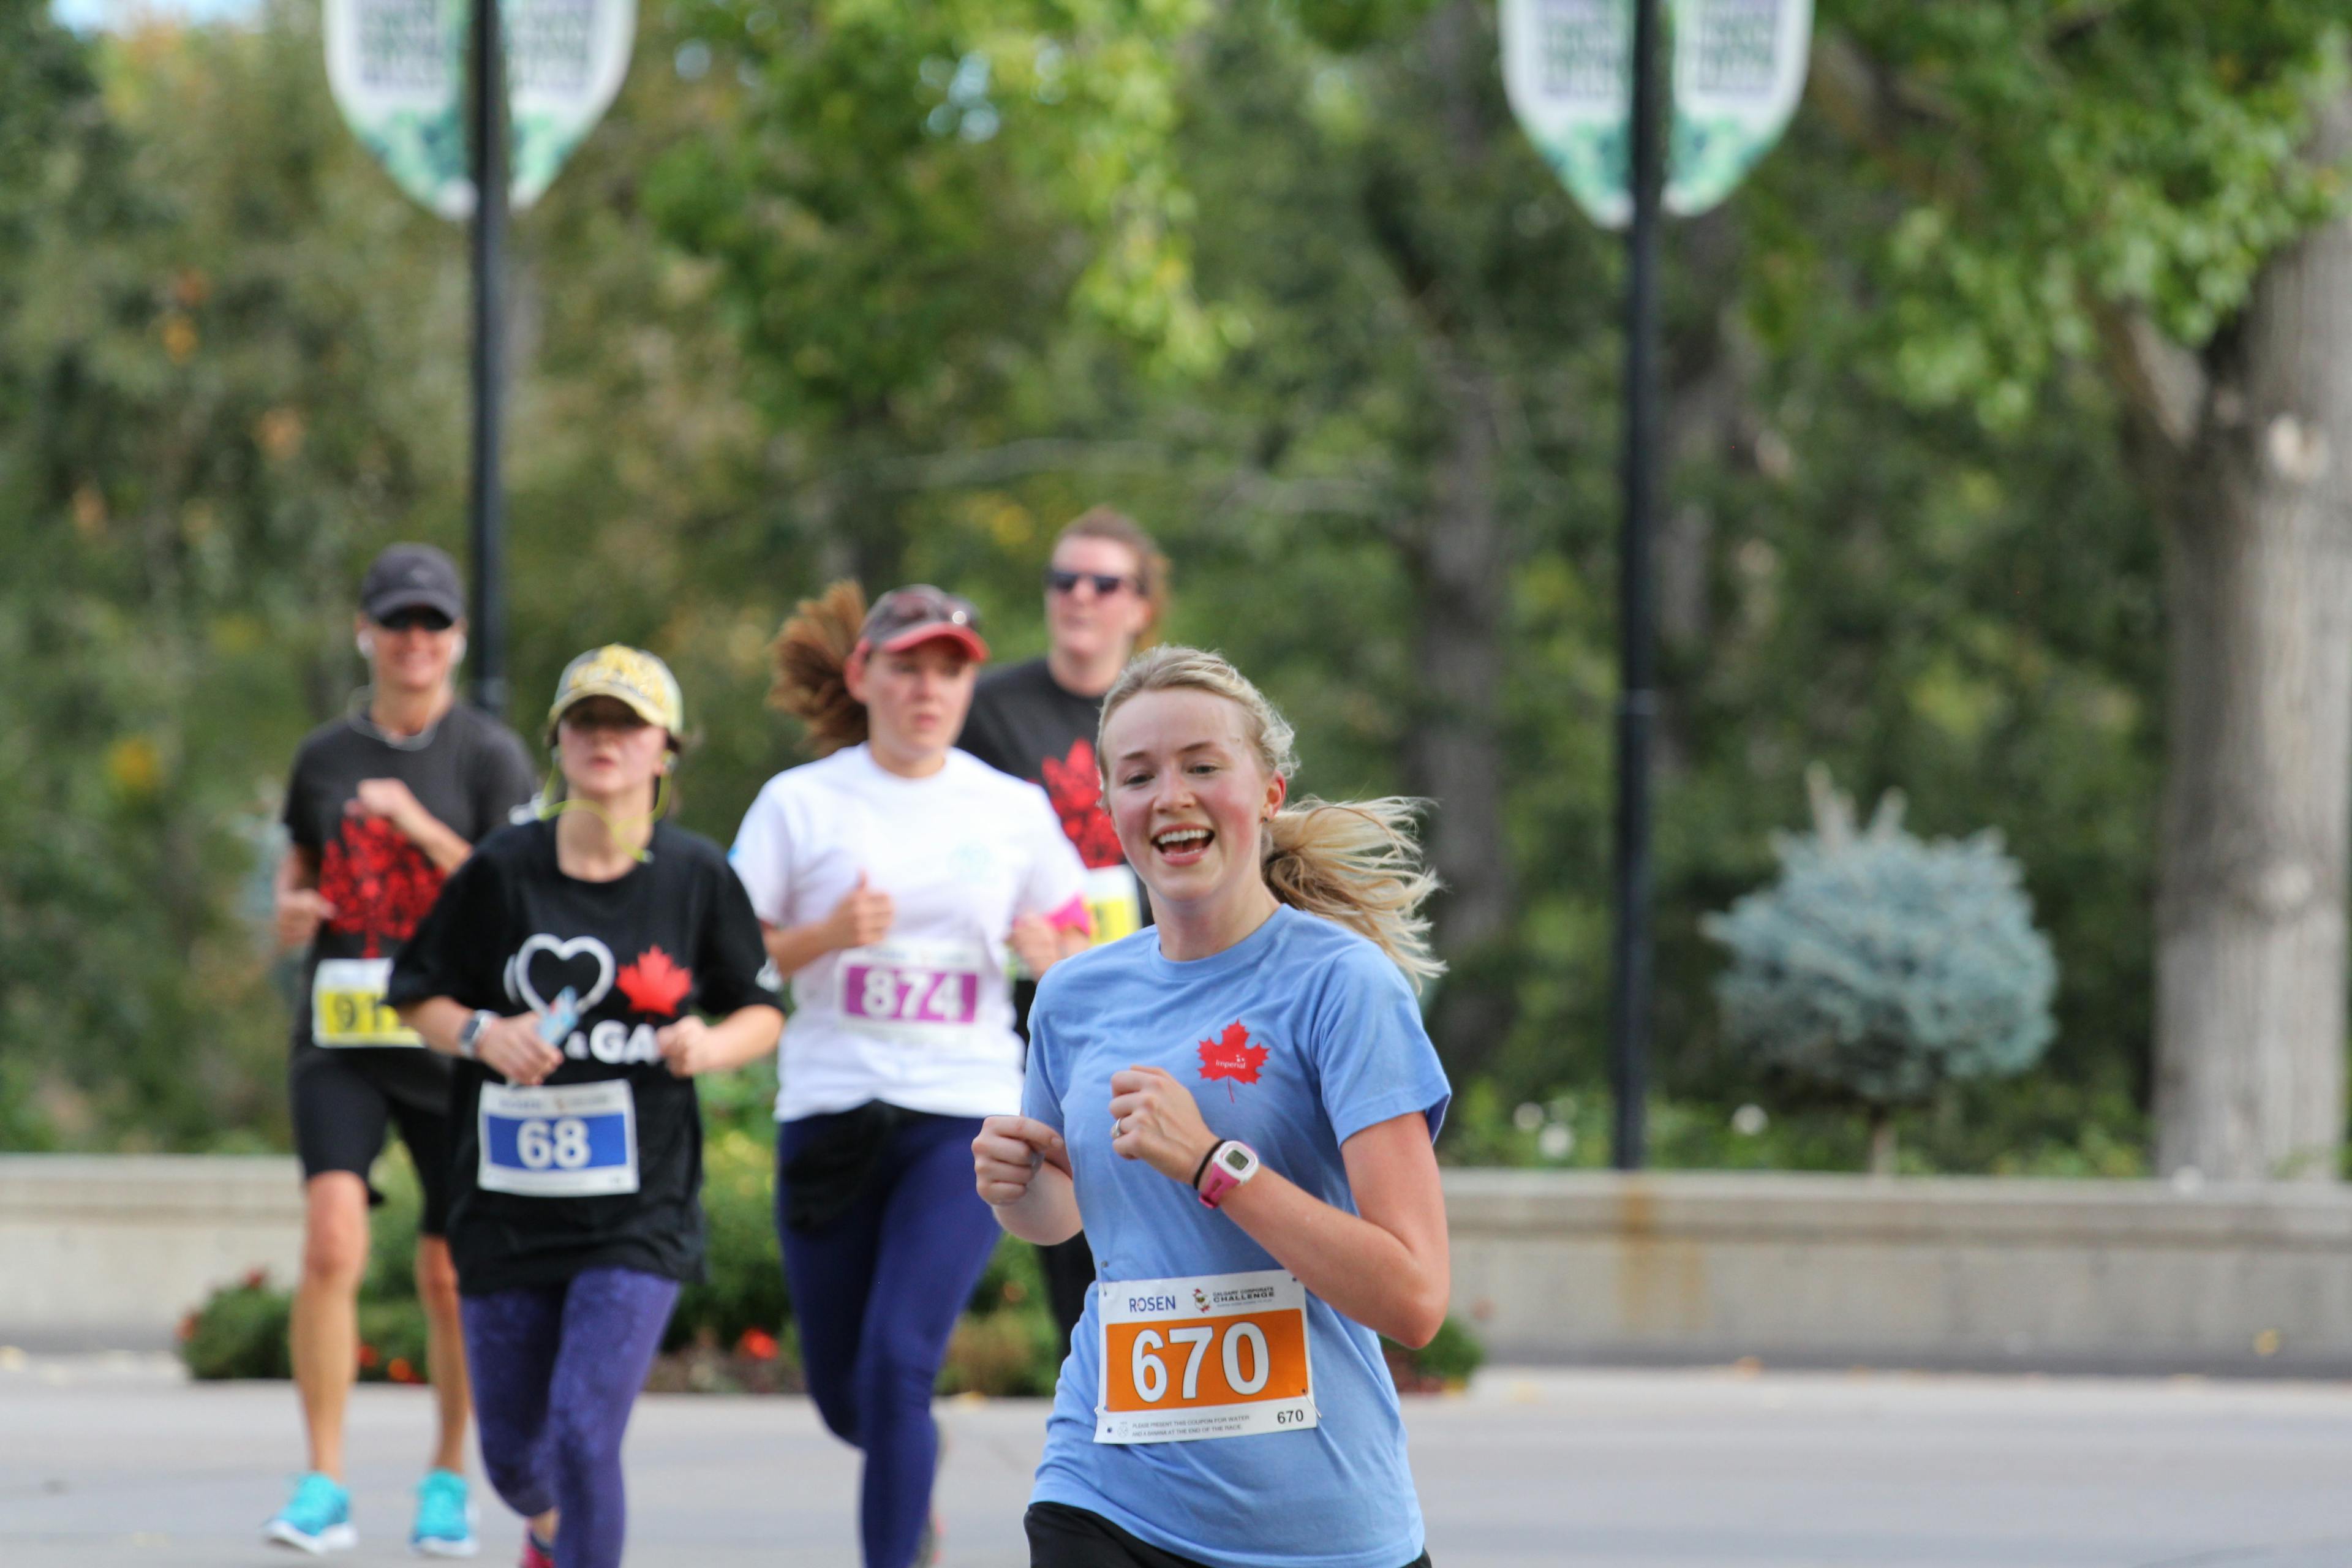 smiling woman running